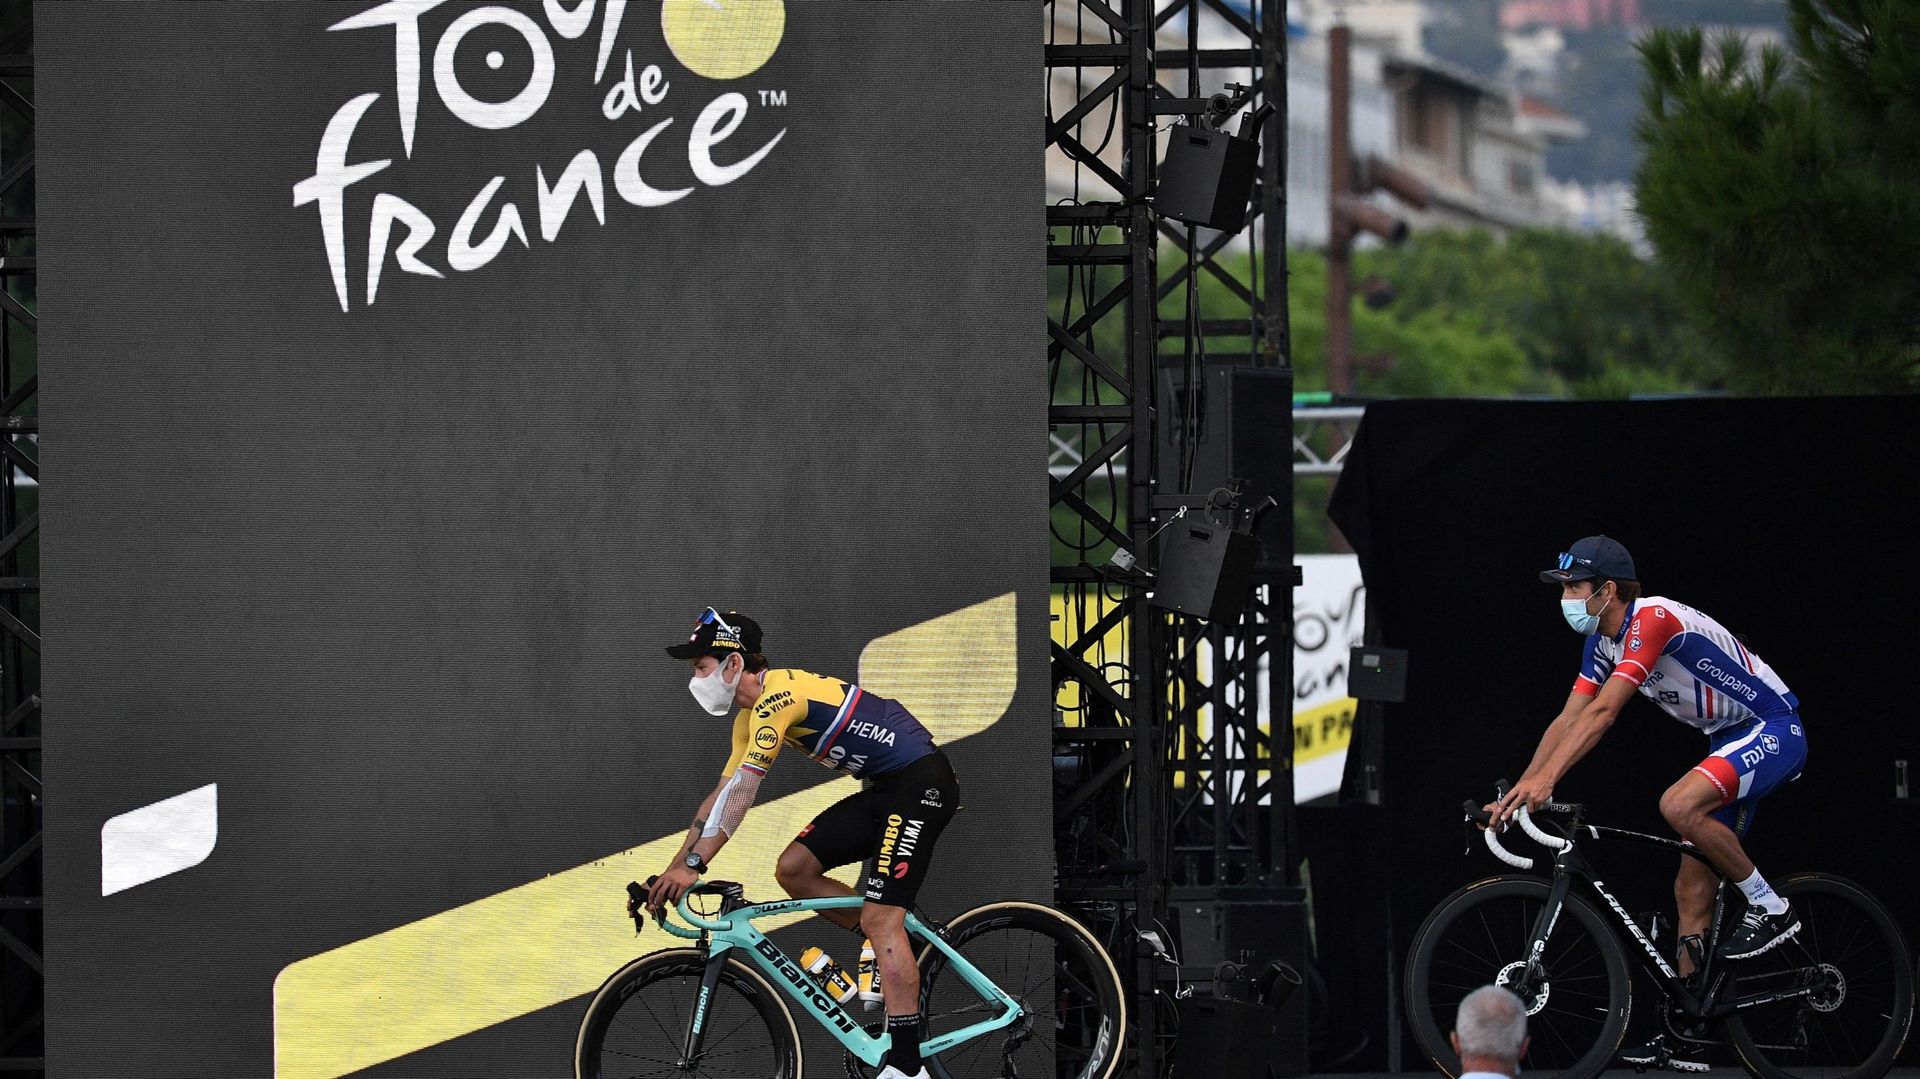 Tour de France: exclusion prononcée si deux cas de Covid dans l'équipe, encadrement inclus